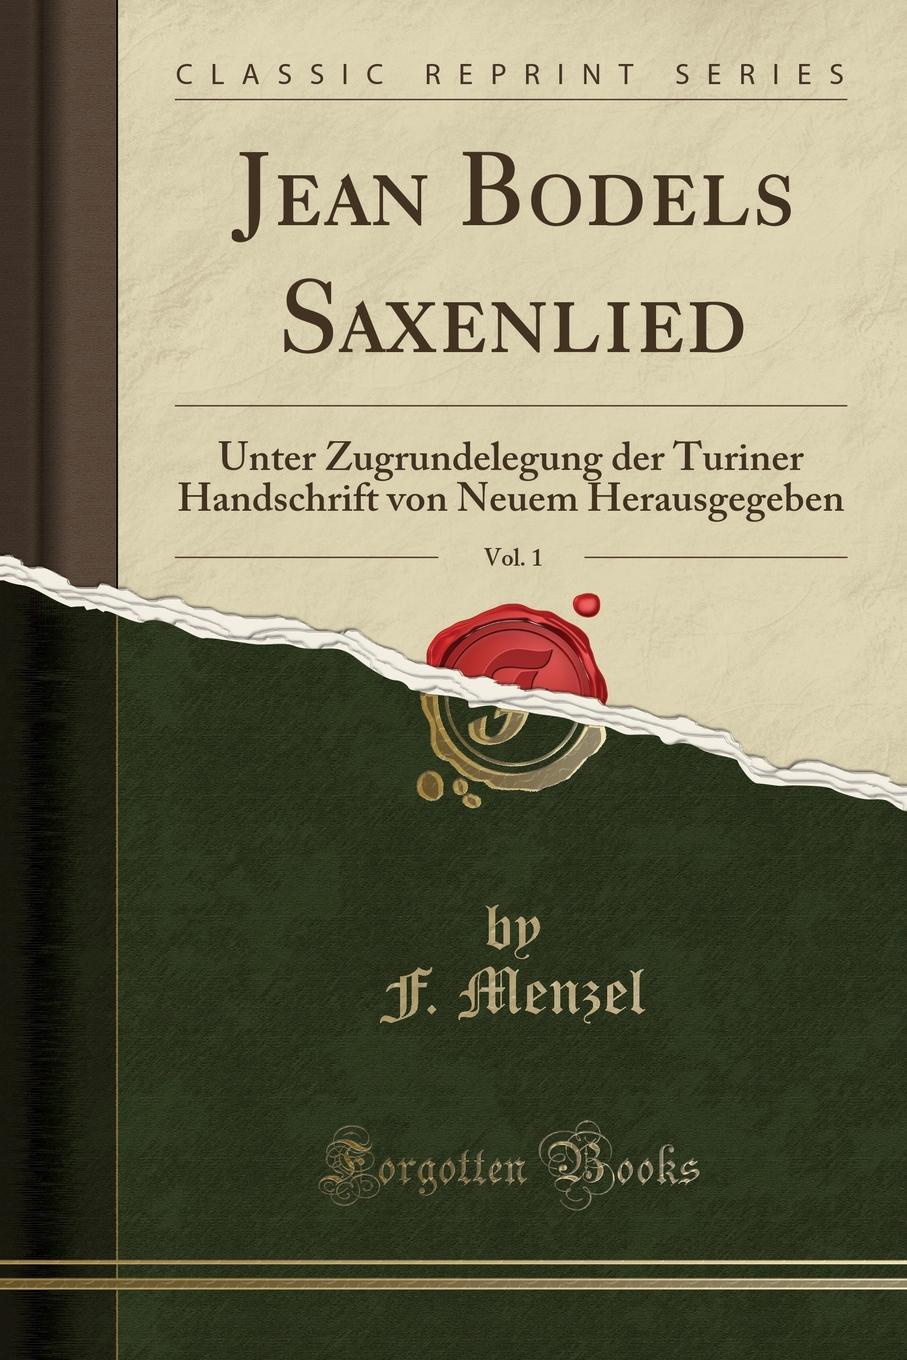 F. Menzel Jean Bodels Saxenlied, Vol. 1. Unter Zugrundelegung der Turiner Handschrift von Neuem Herausgegeben (Classic Reprint)